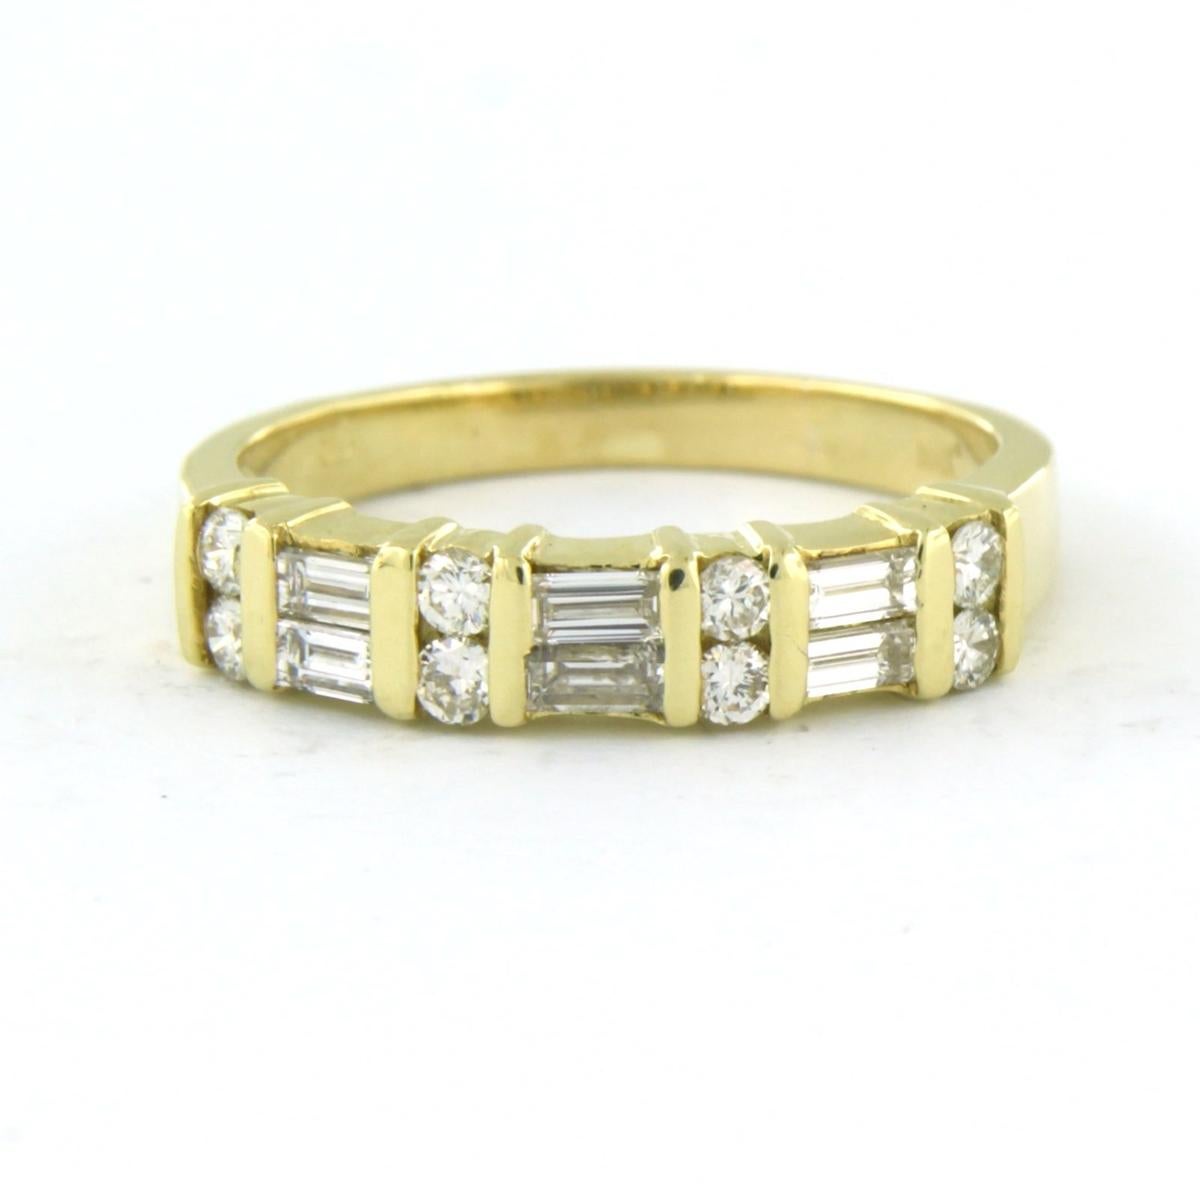 Ring aus 18 Karat Gelbgold, besetzt mit Diamanten im Baguette- und Brillantschliff. 1.00ct - F/G - VS/SI - Ringgröße U.S. 9.25 - EU. 19.25 (60)

detaillierte Beschreibung:

Die Oberseite des Rings ist 4.5 mm breit.

Gewicht: 5,3 Gramm

Ringgröße US